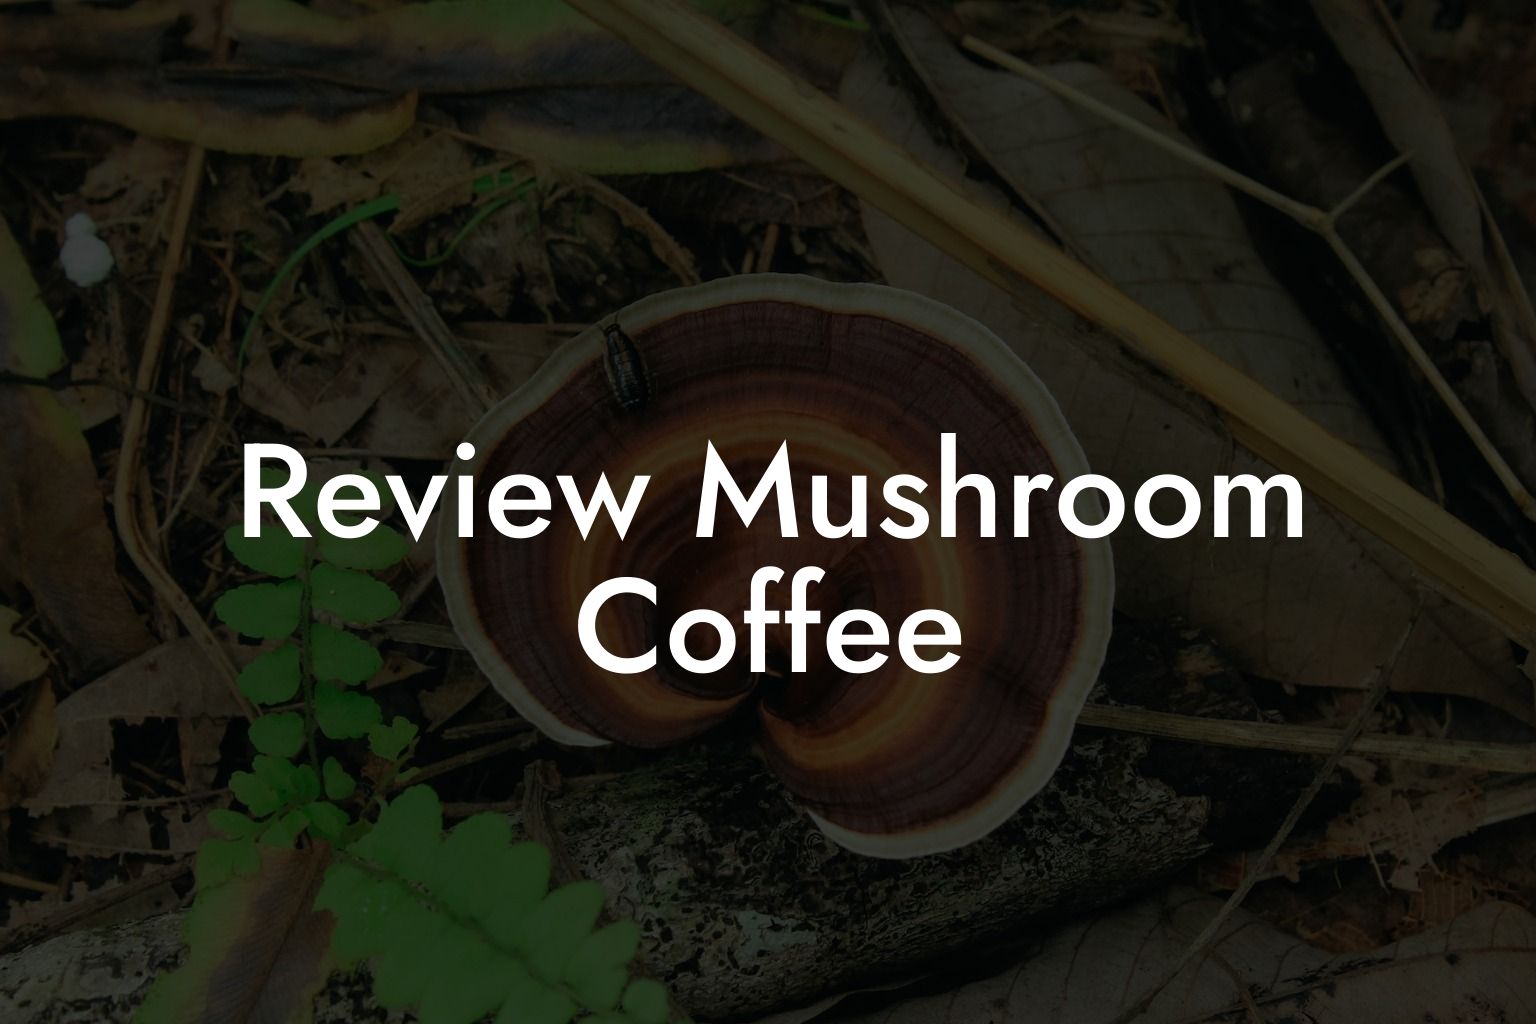 Review Mushroom Coffee